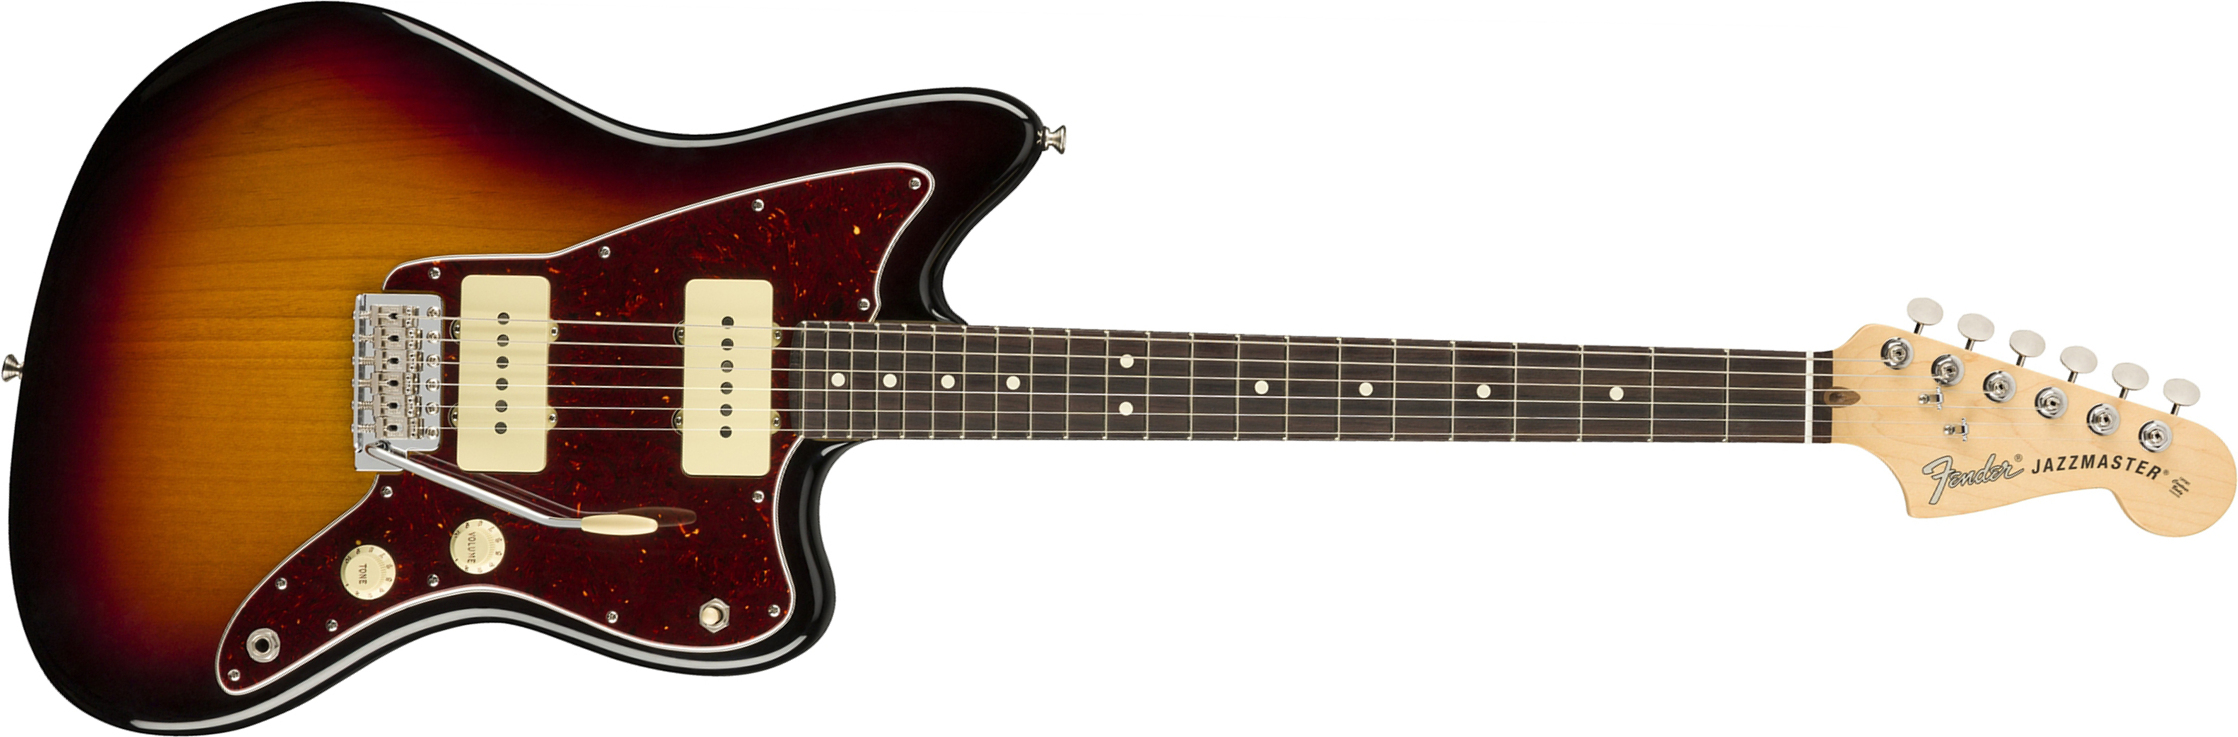 Fender Jazzmaster American Performer Usa Ss Rw - 3-color Sunburst - Guitare Électrique Double Cut - Main picture